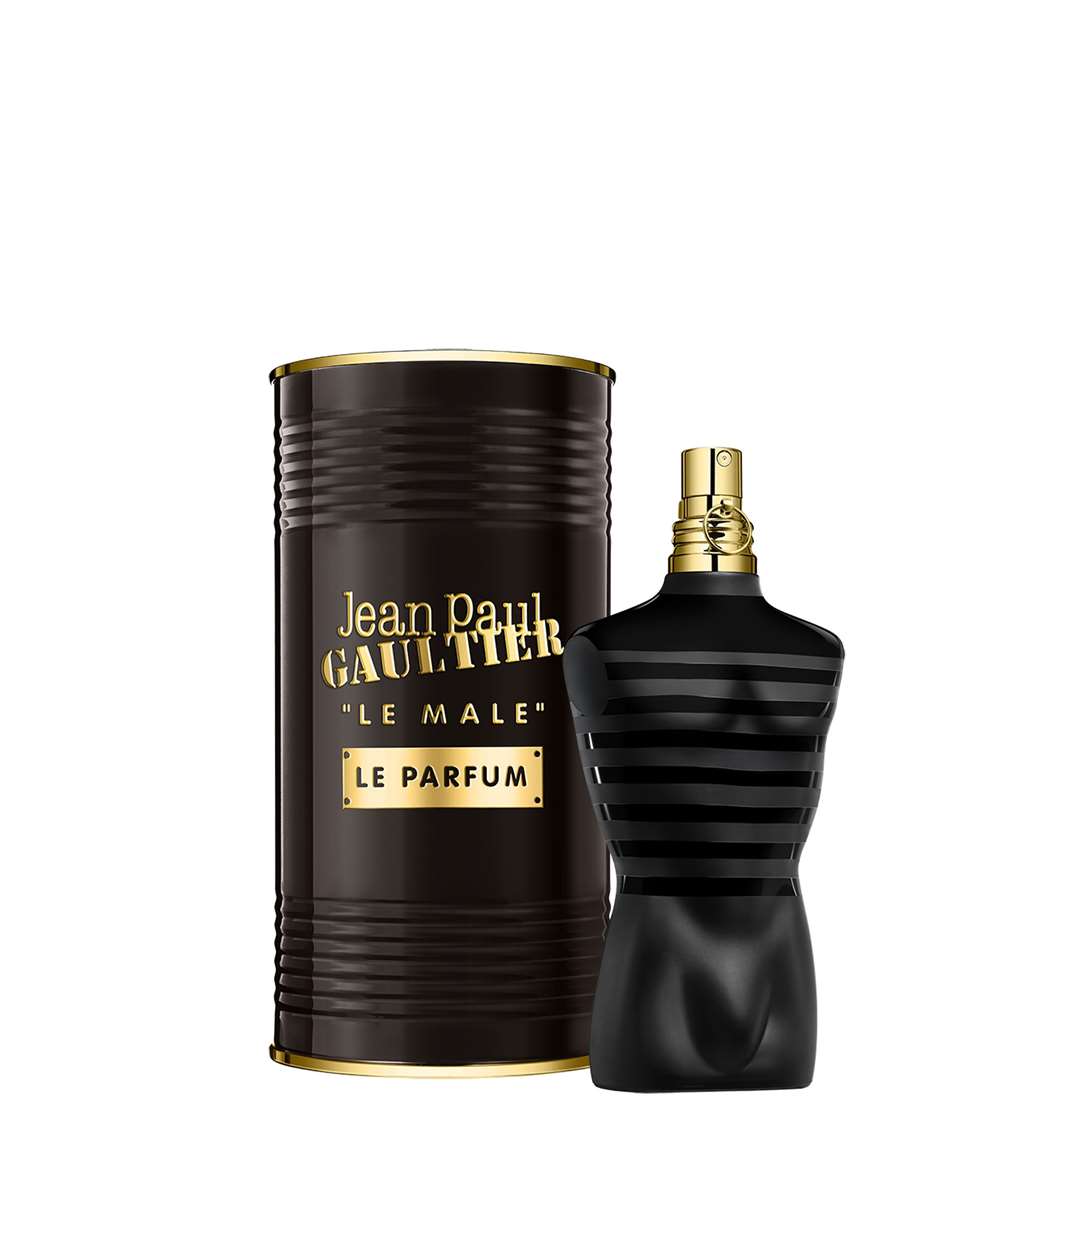 Jean Paul Gaultier Le Male Le Parfum. Picture: Handout/PA.